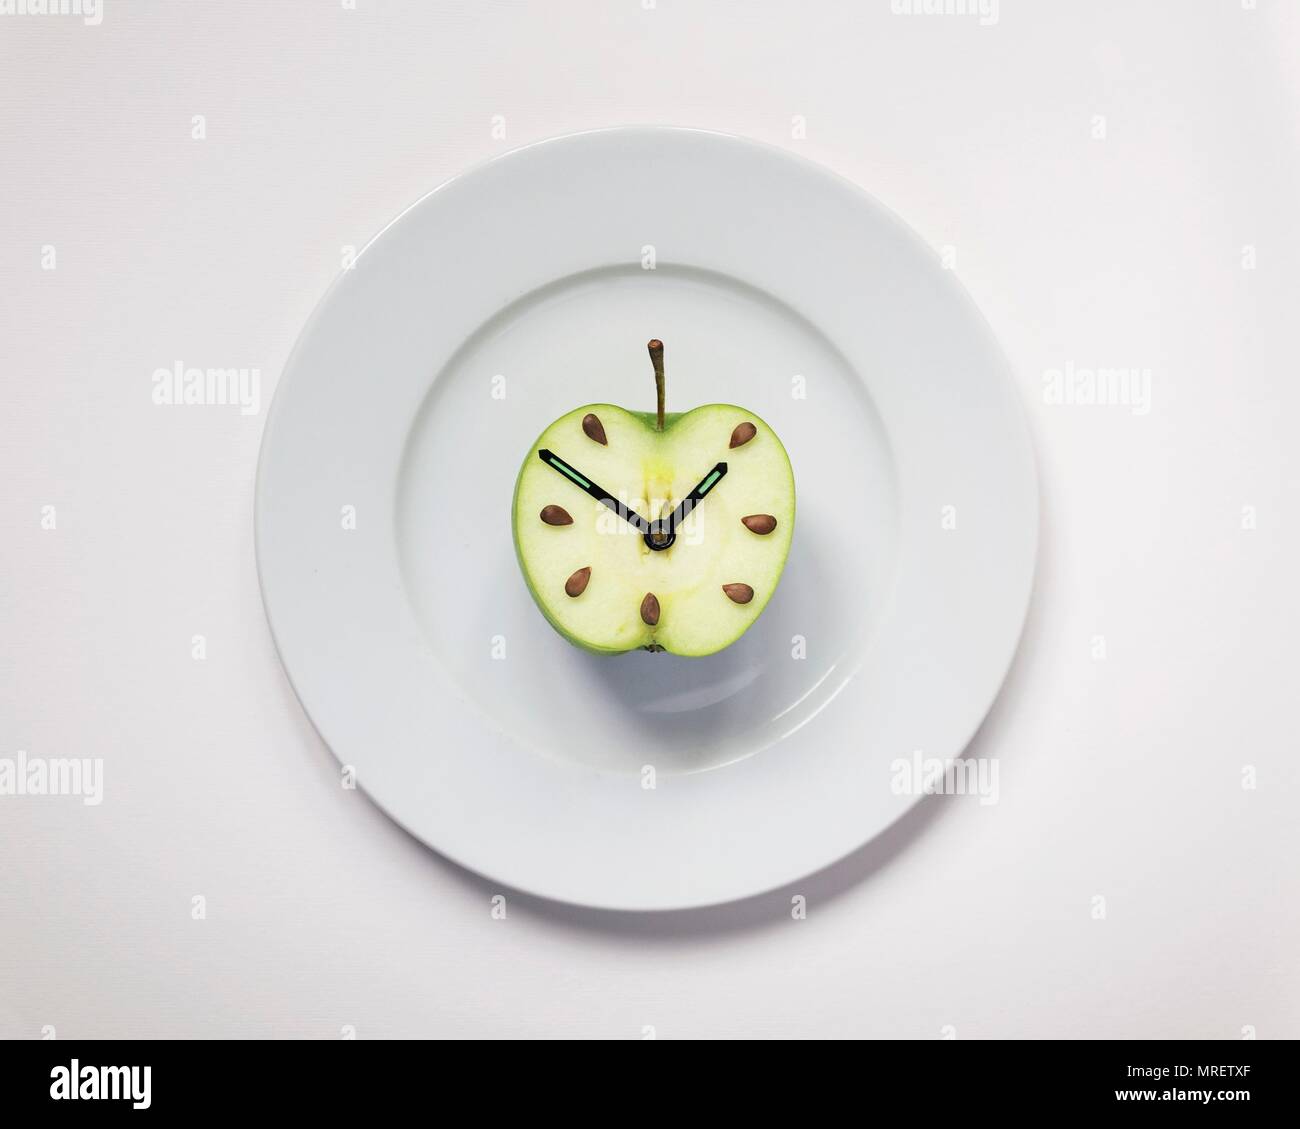 Une demi-pomme sur la plaque avec des aiguilles d'horloge, studio shot. Banque D'Images